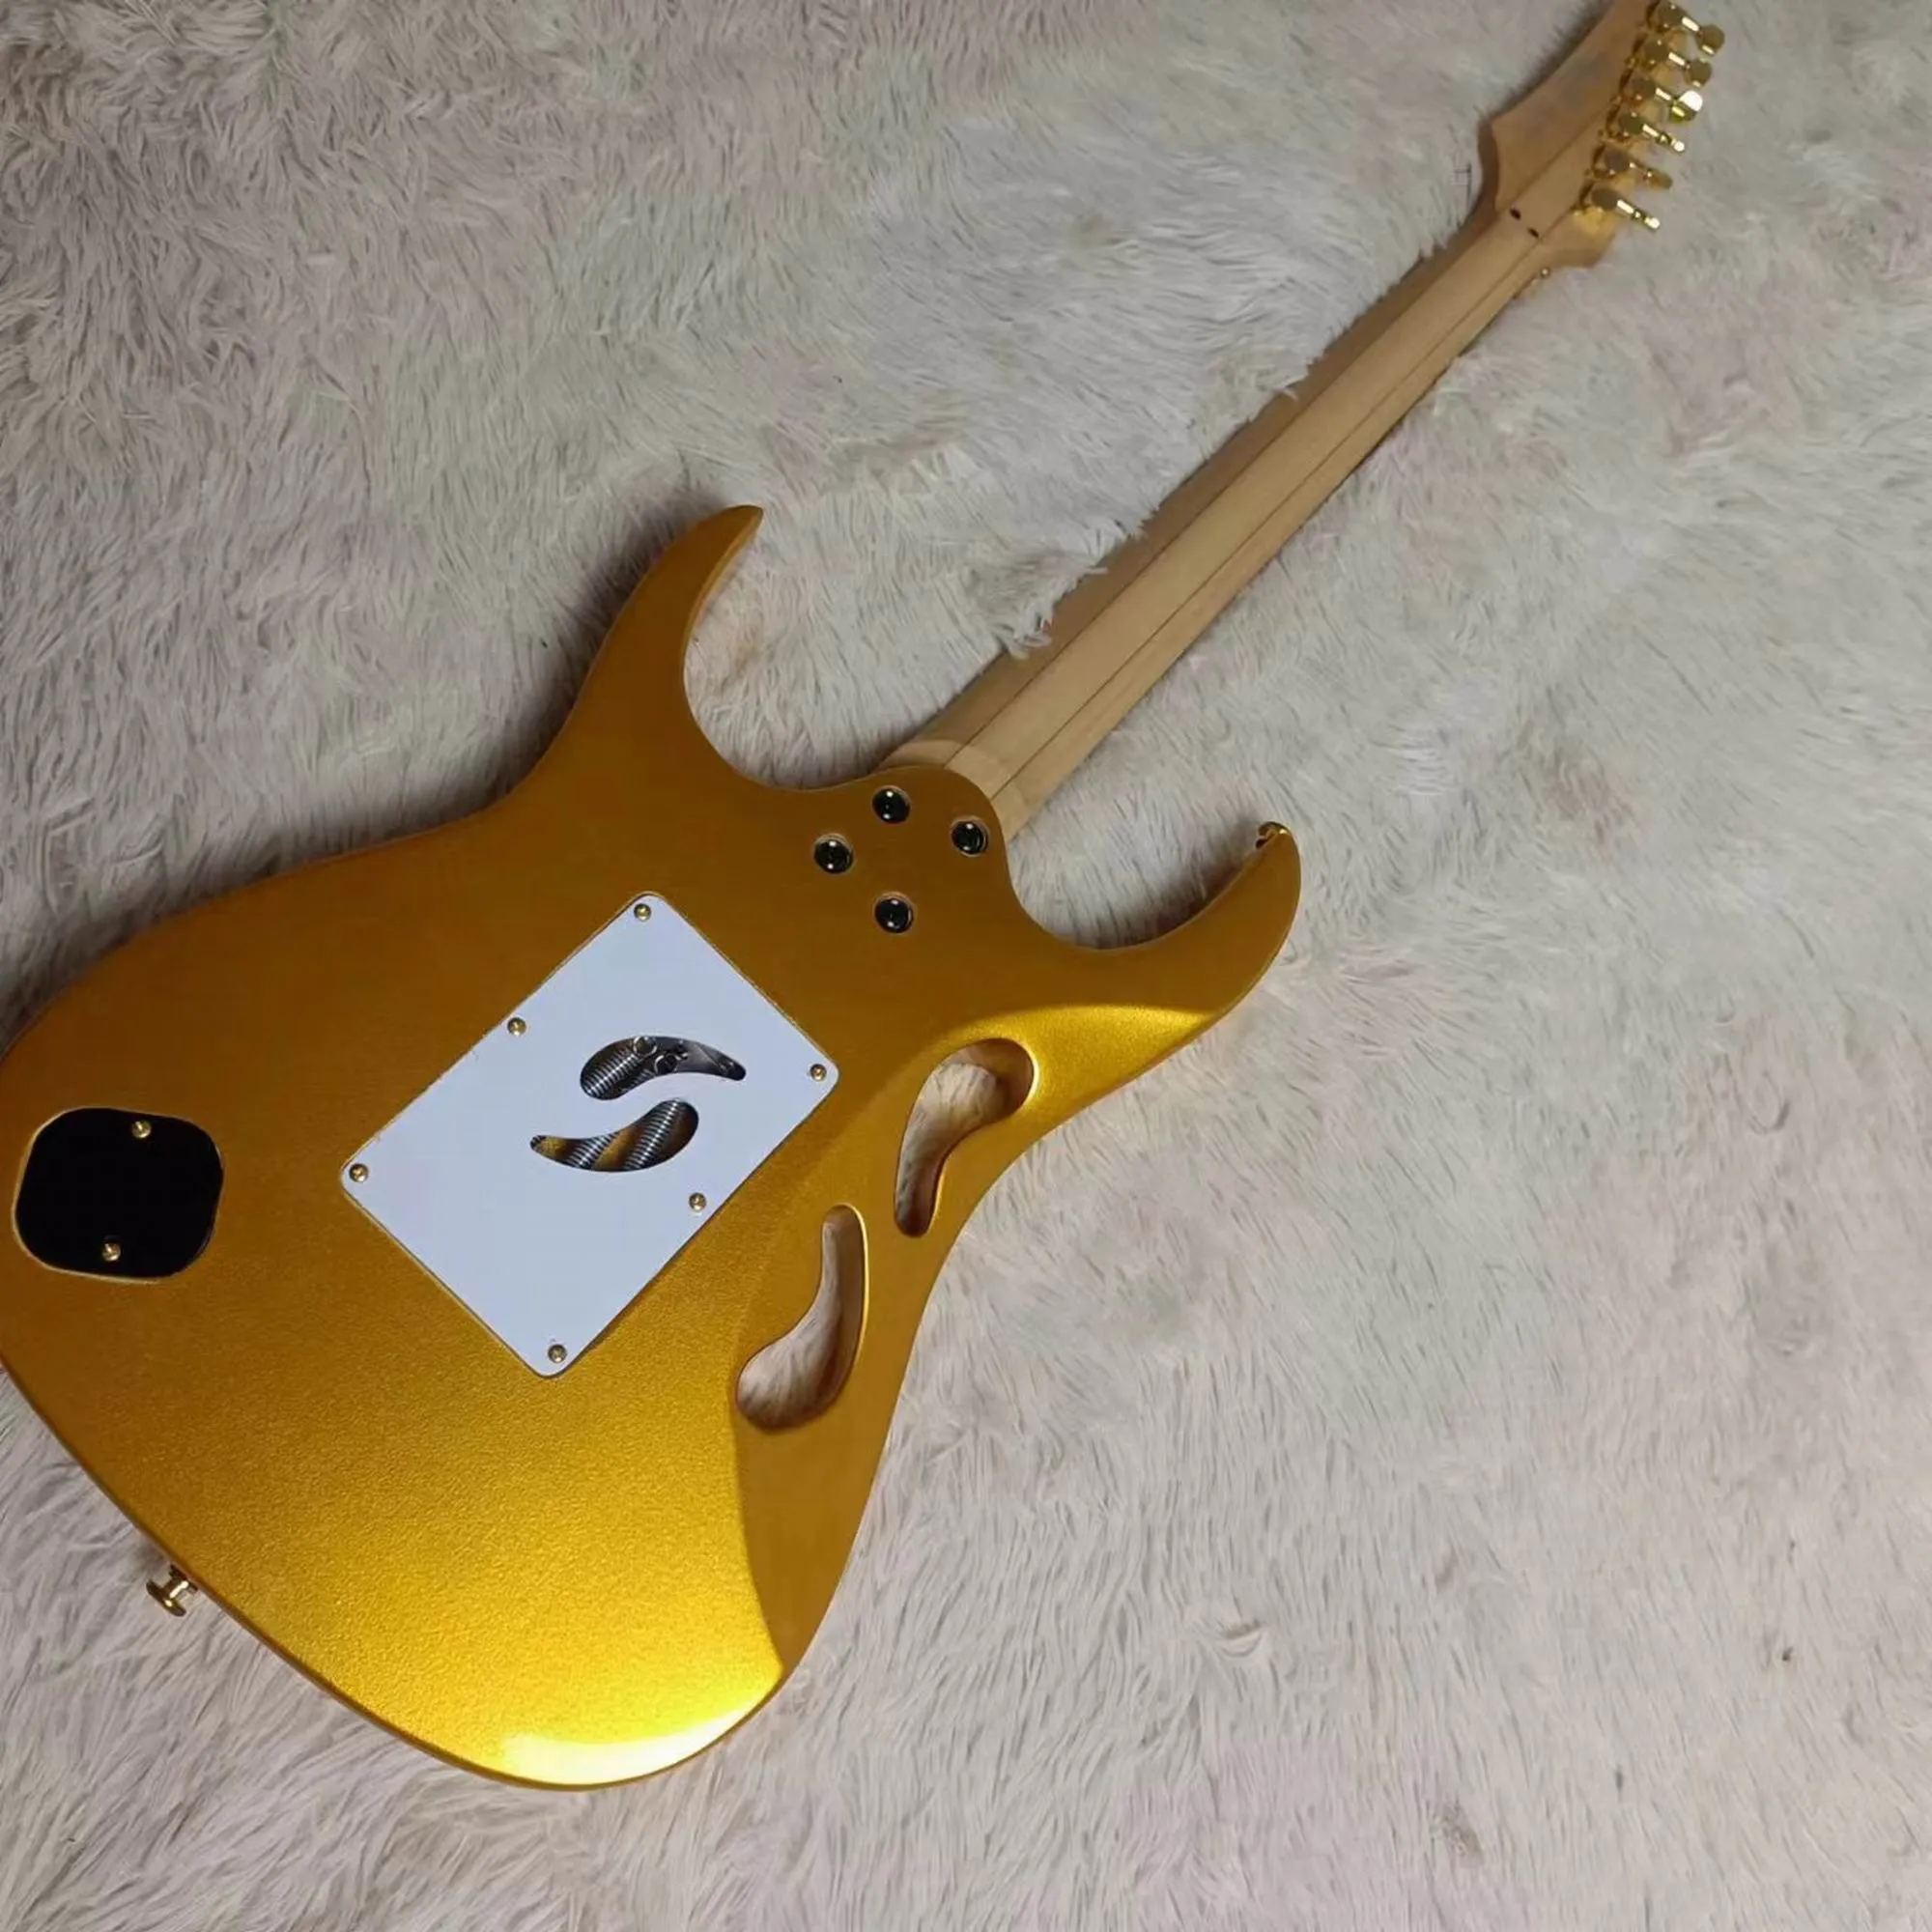 W Stock Jem Electric Guitar Visa 7V Model w Gold Goldtop 2403